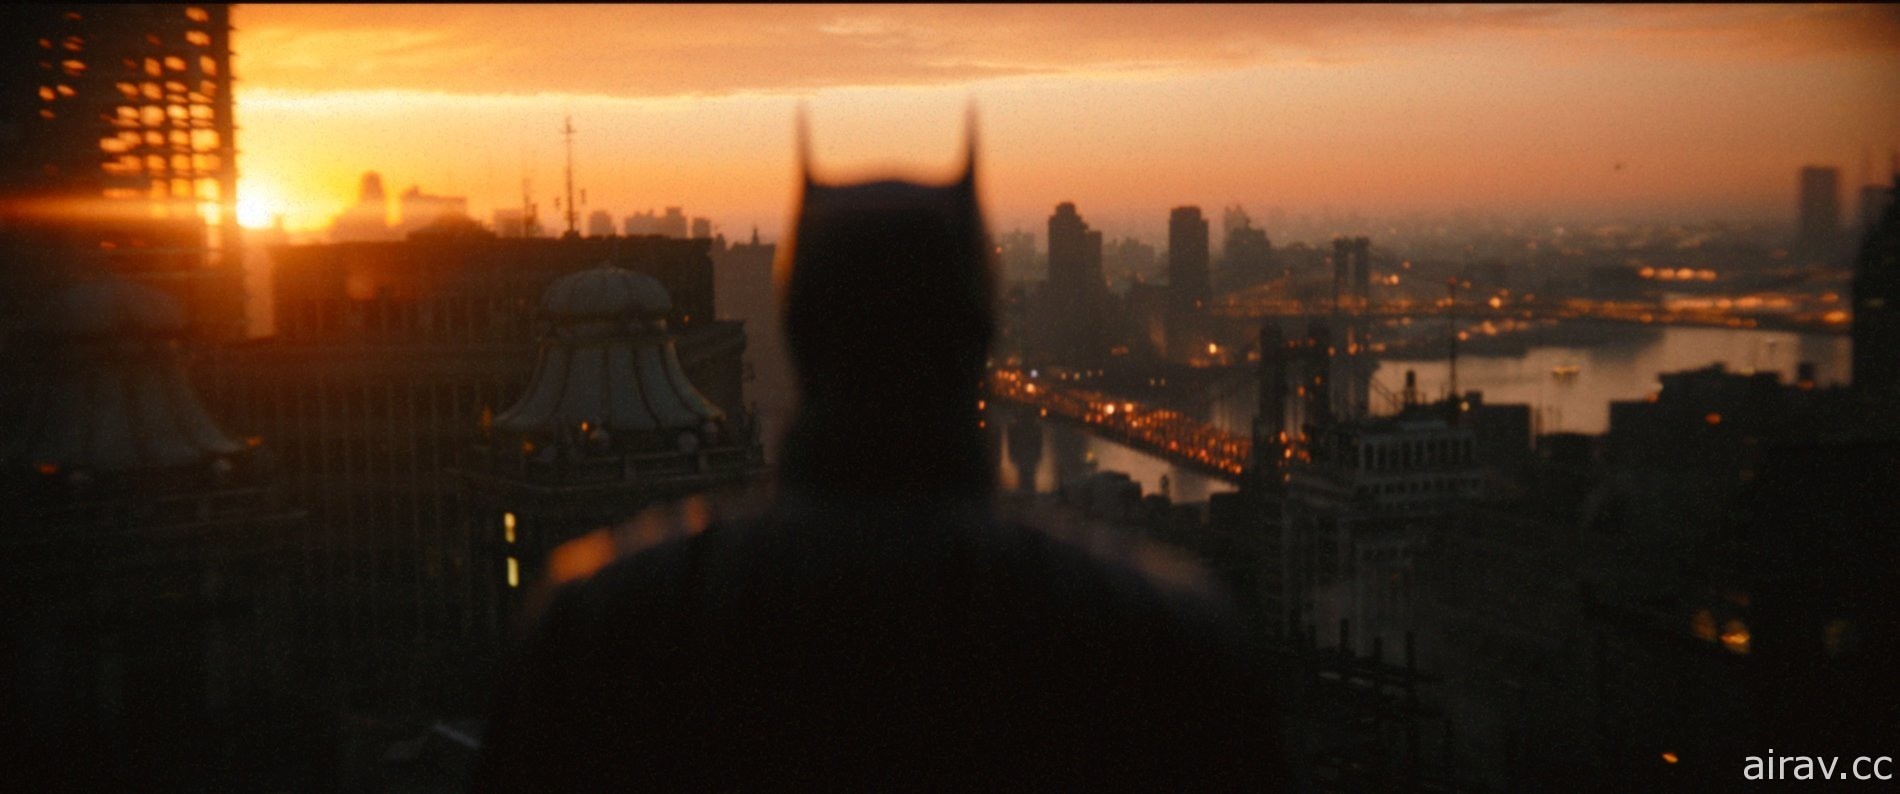 罗伯派汀森《蝙蝠侠》于 CinemaCon 2022 活动上宣布将推续作消息